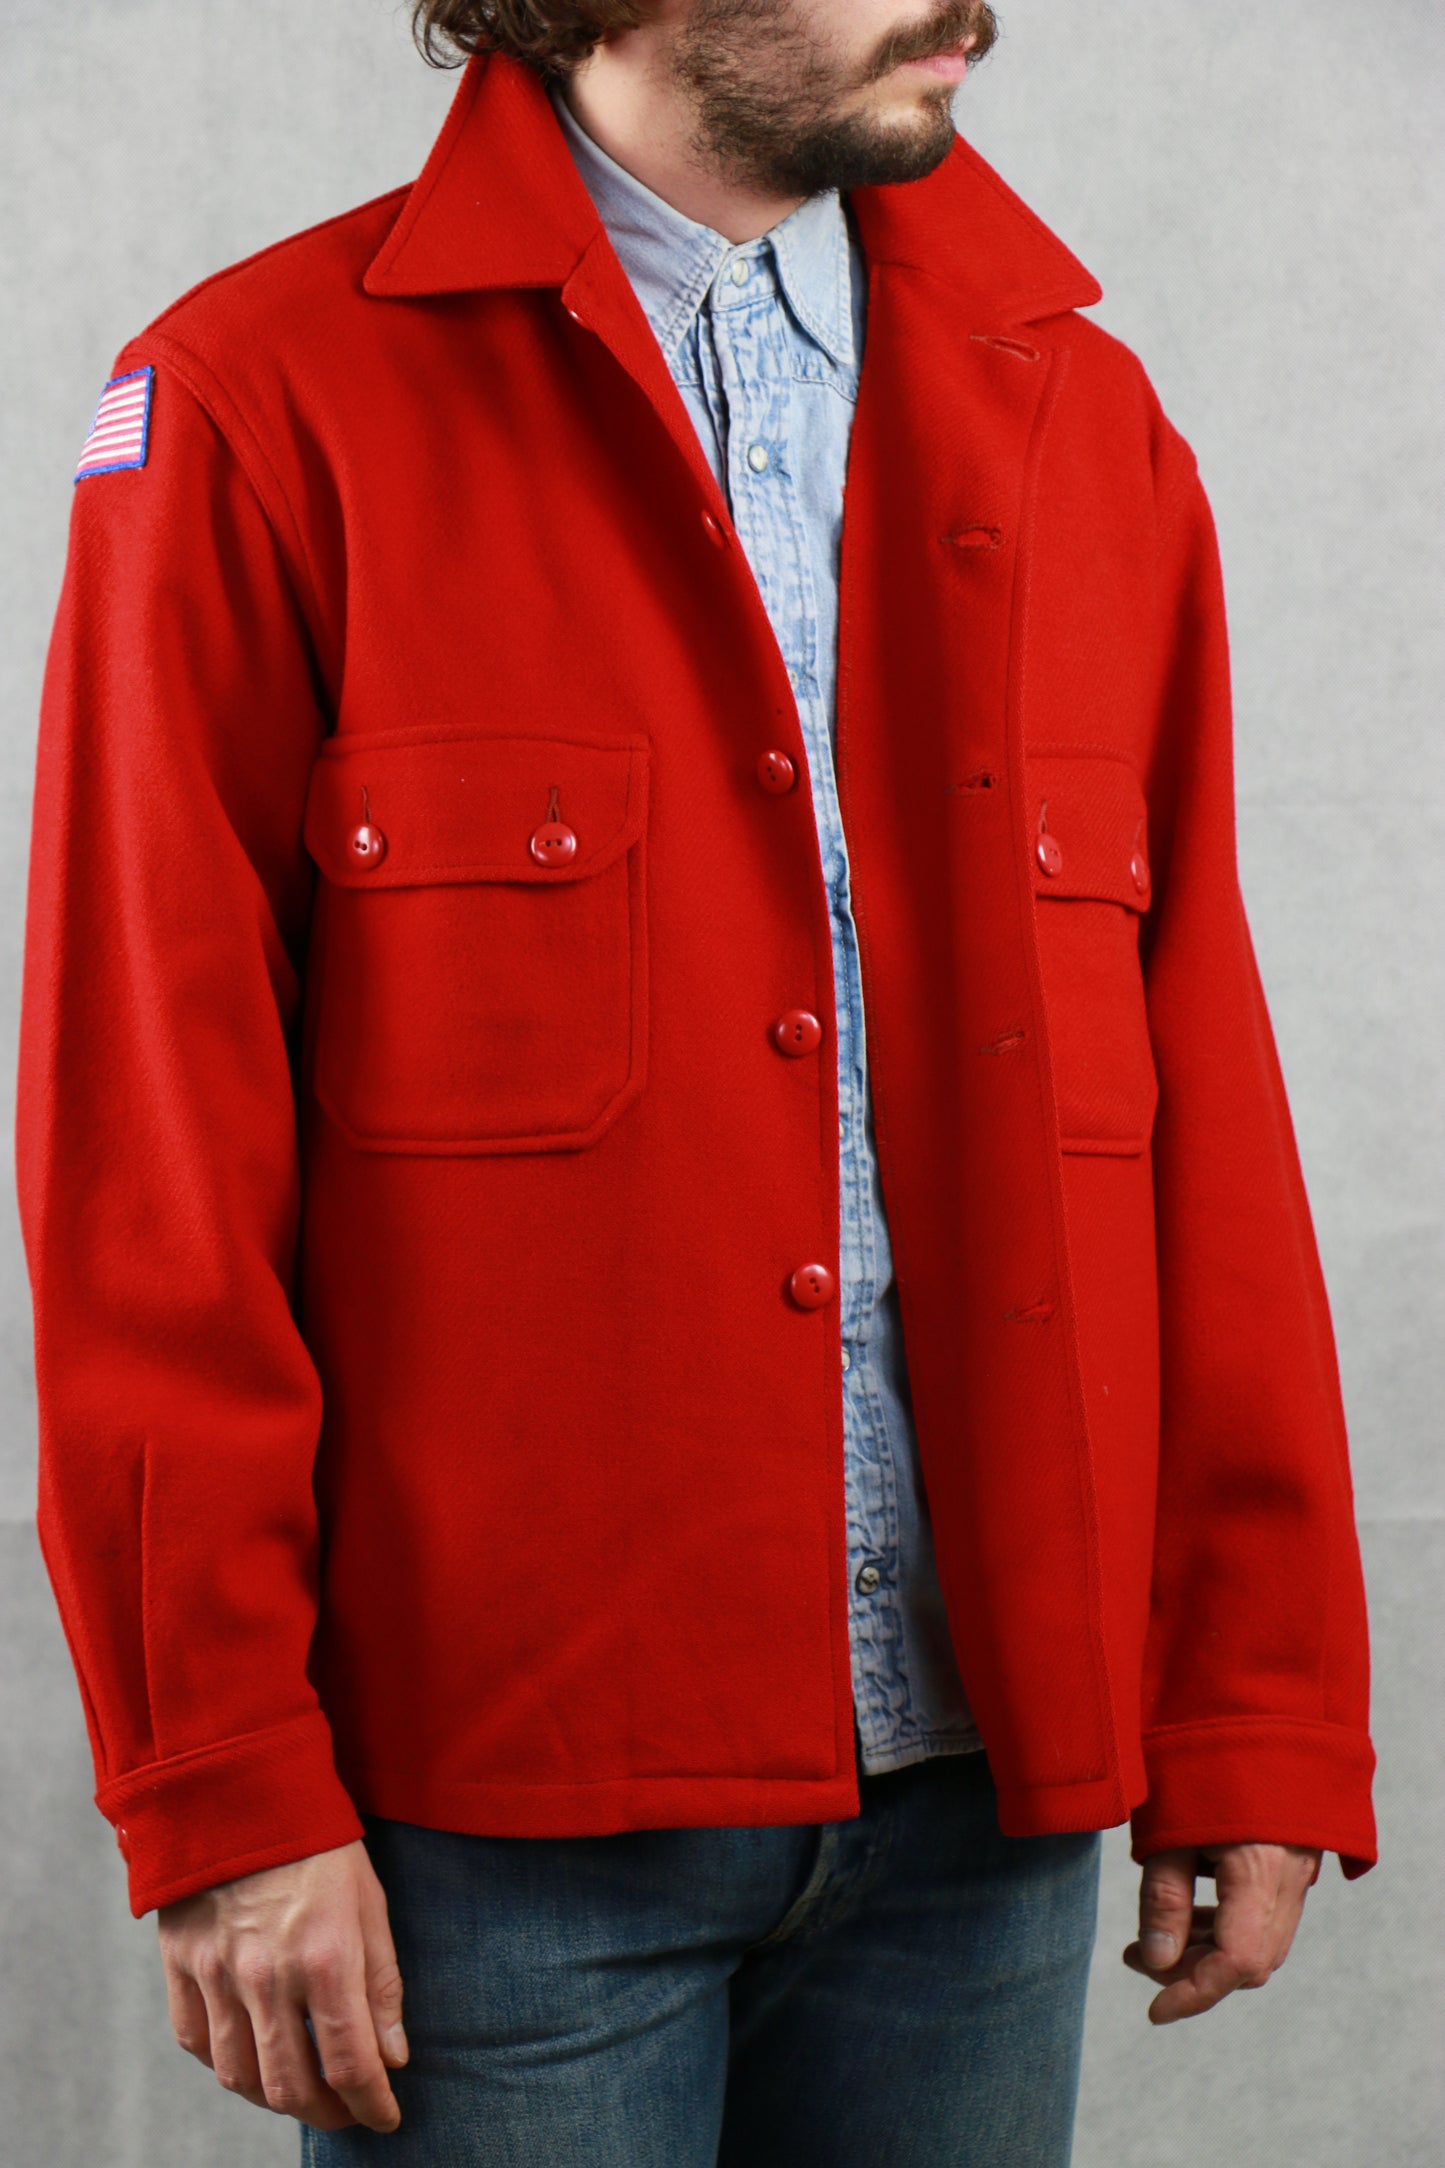 Boy Scout Red Shirt, clochard92.com